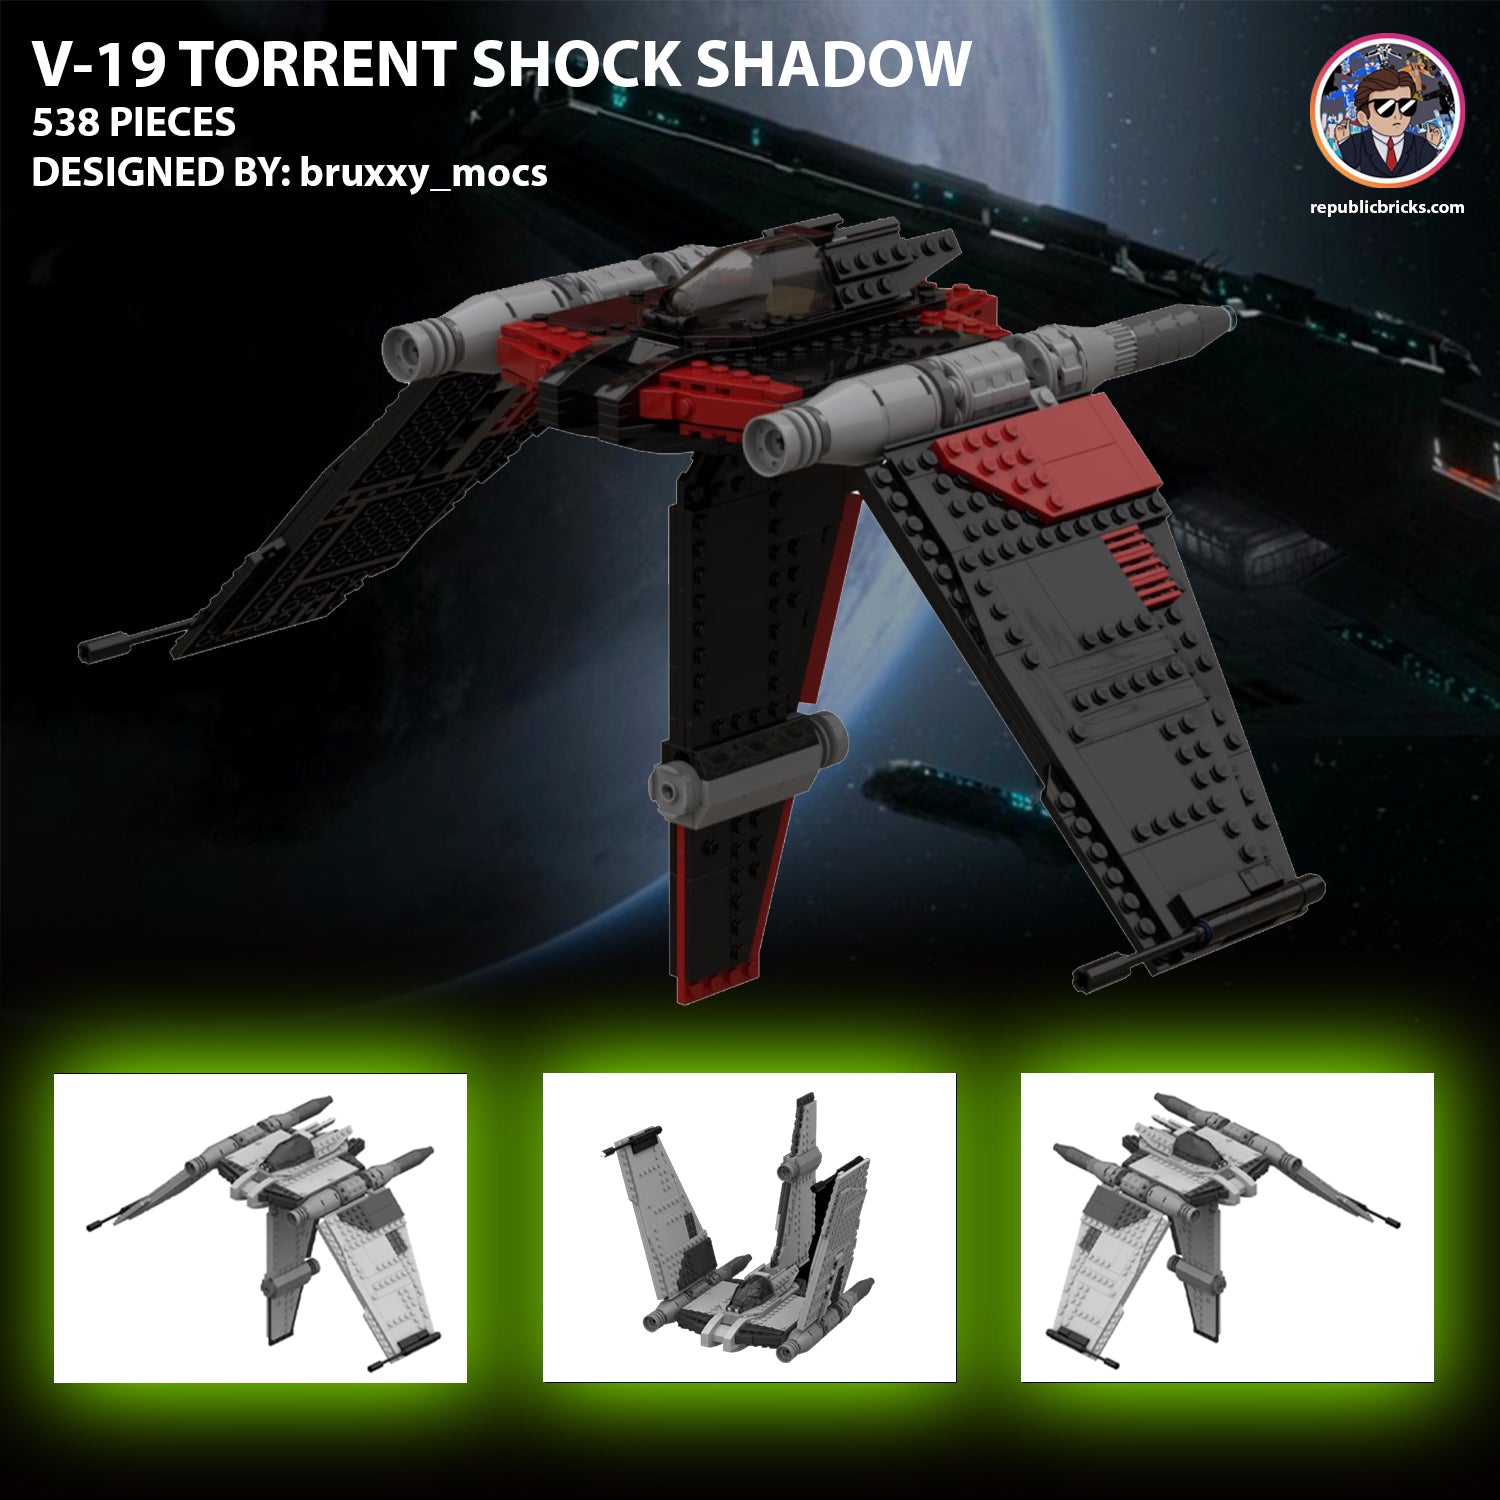 SHADOW SHOCK V-19 TORRENT